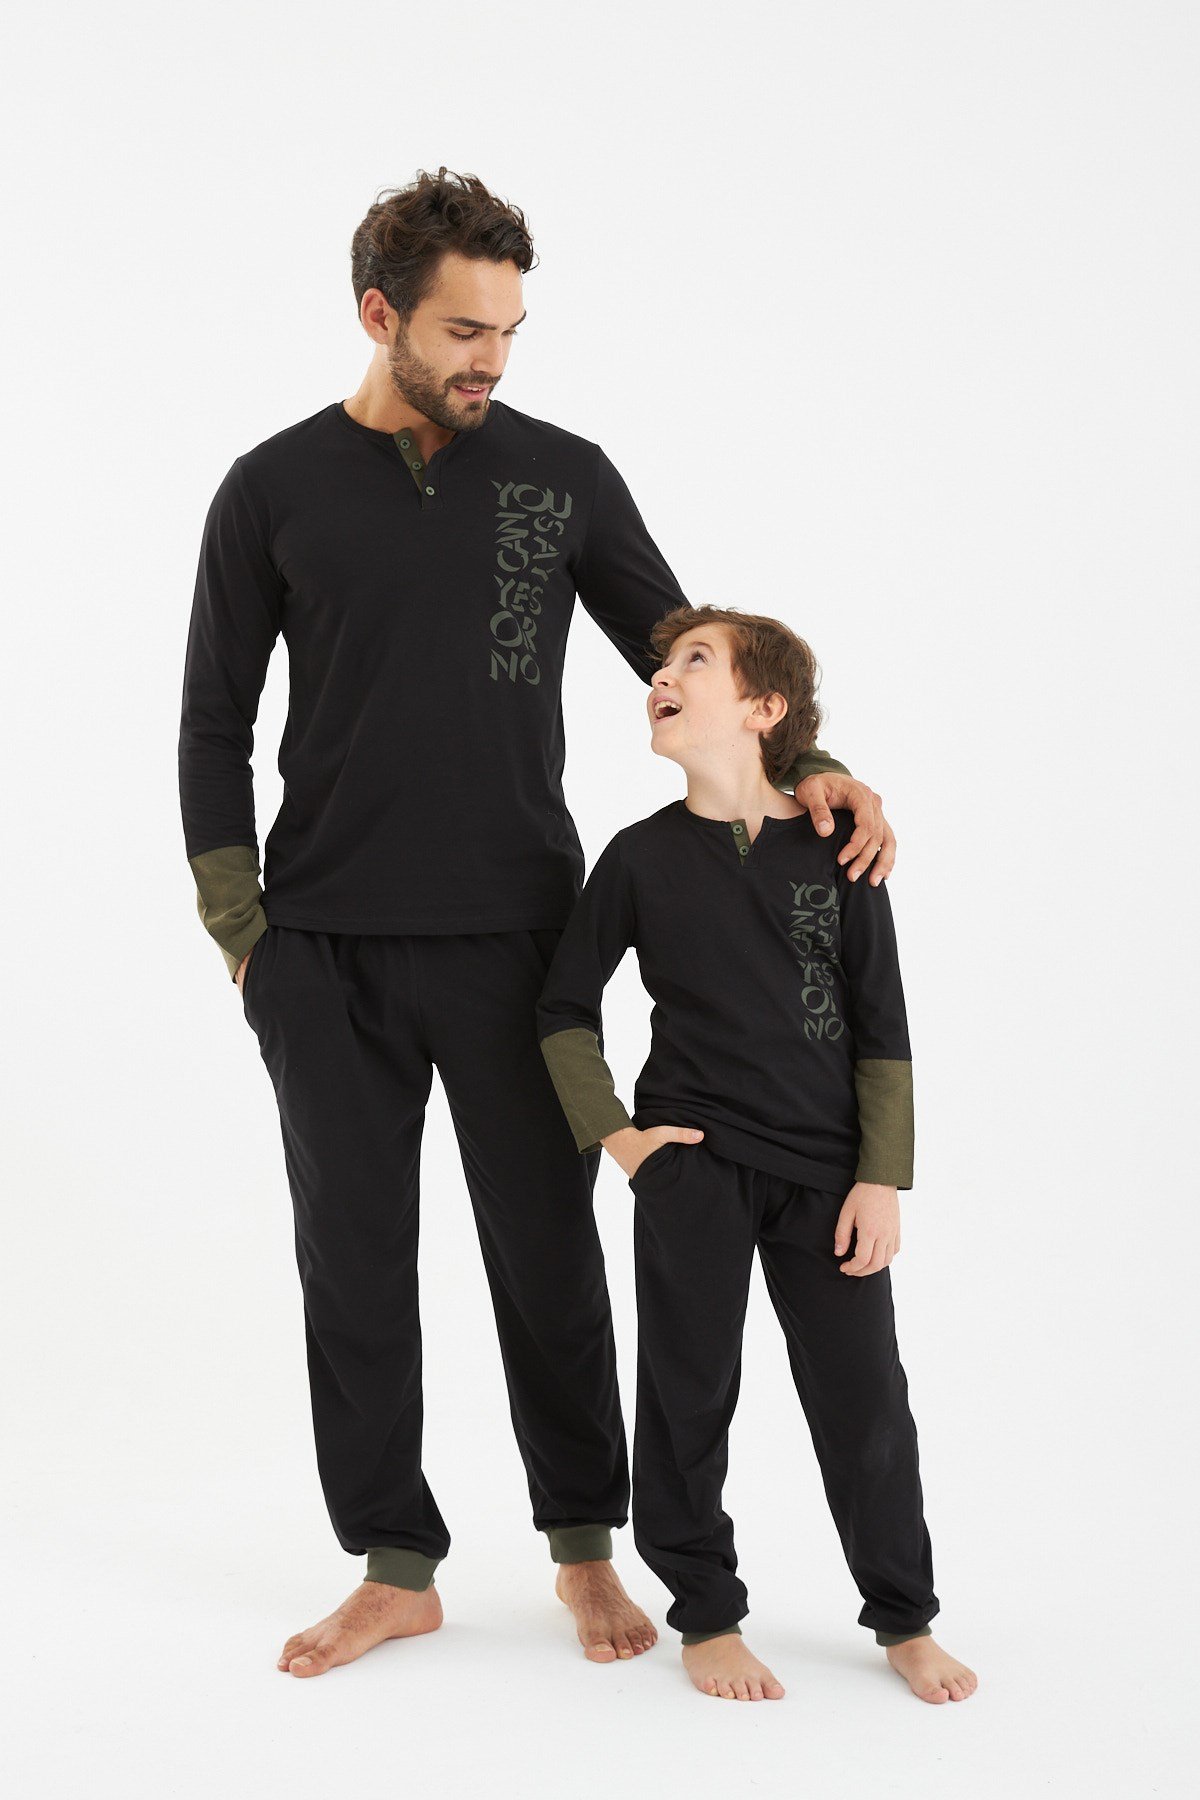 YES & NO Pijama Takımı Baba oğul ayrı ayrı satılır fıyatları farklıdır.